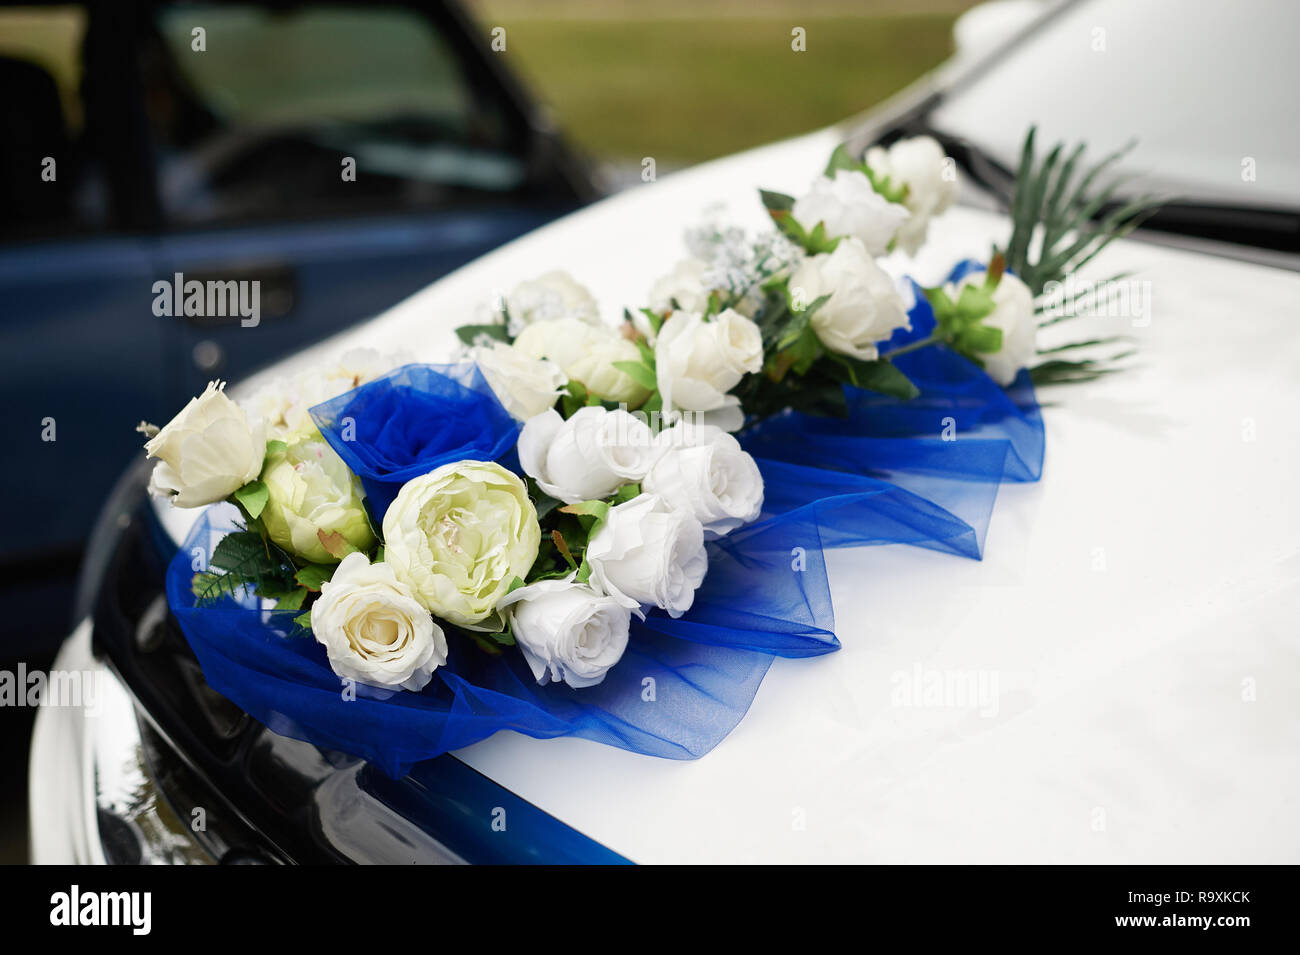 https://c8.alamy.com/compfr/r9xkck/decoration-de-voiture-de-mariage-fleurs-bouquet-de-mariage-fleurs-decoration-voiture-r9xkck.jpg